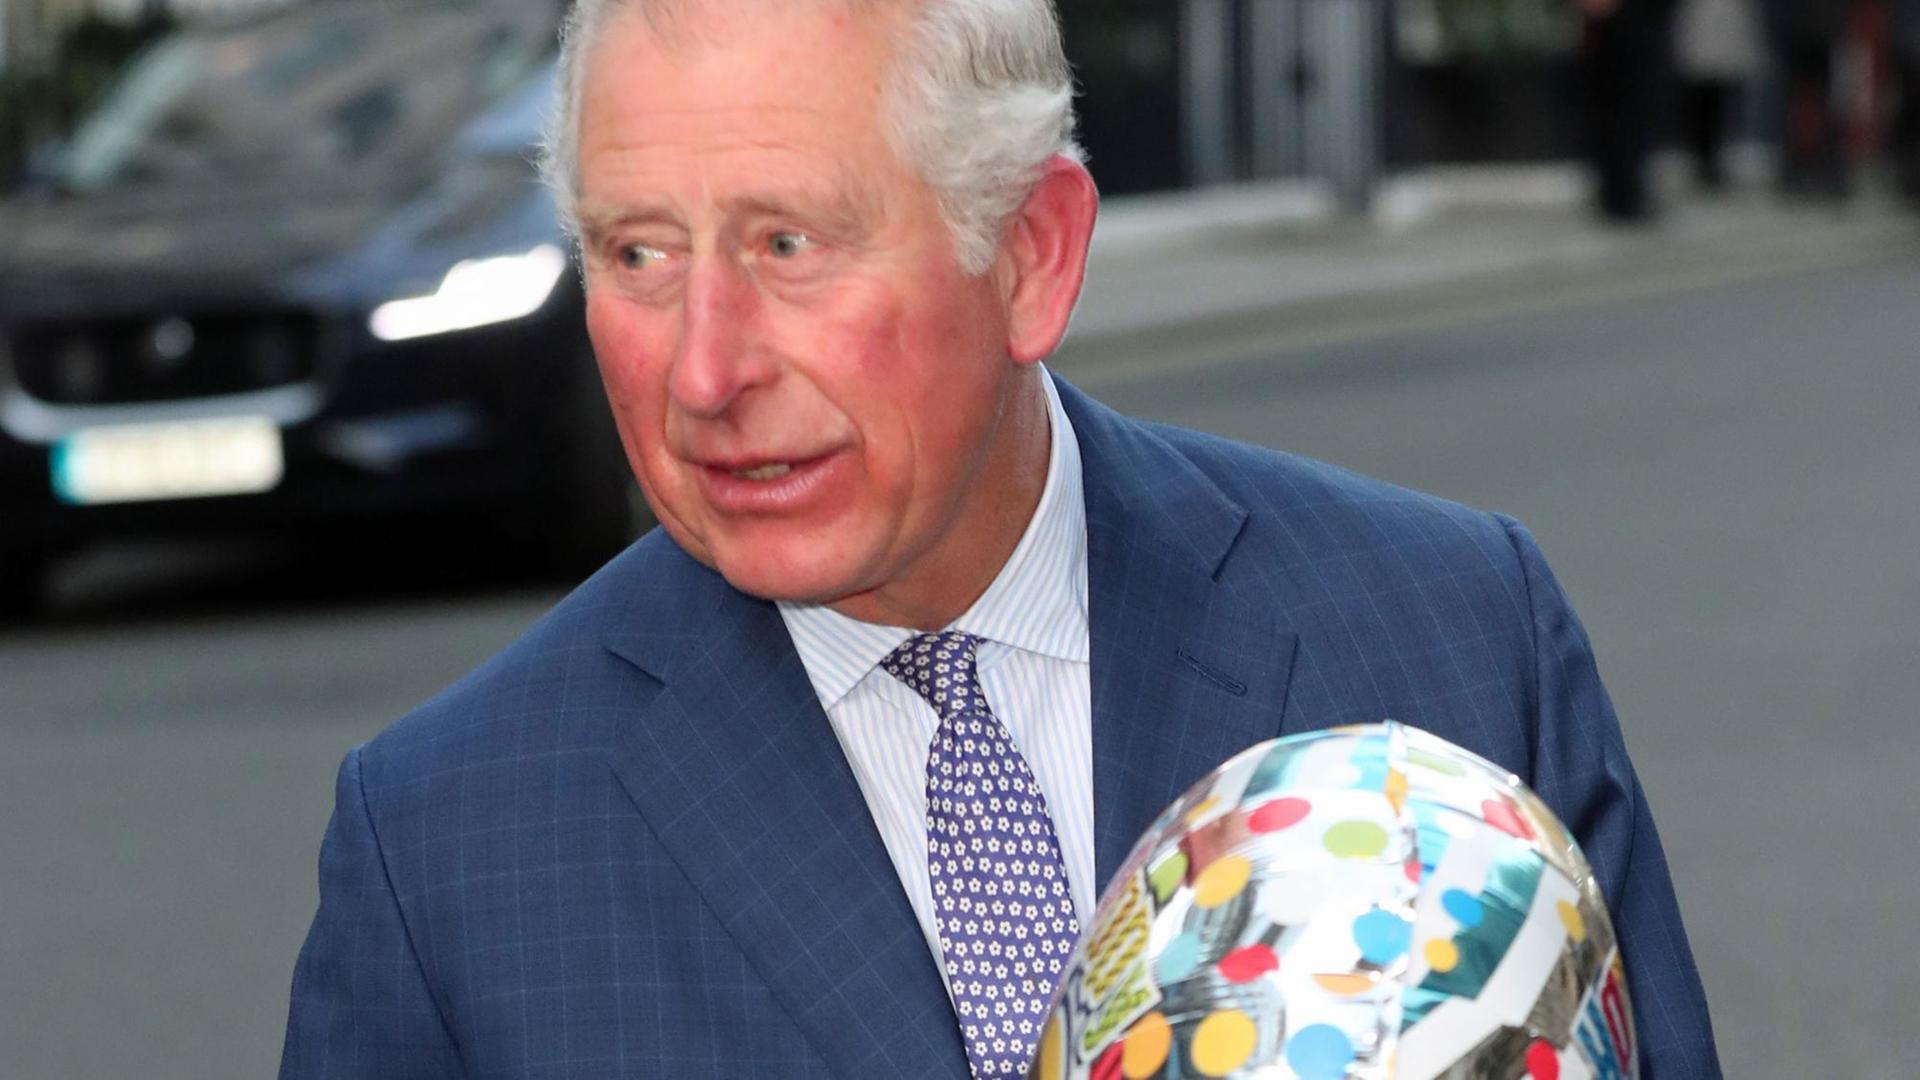 Prinz Charles mit einem Geburtstagsgeschenk an seinem 70. Geburtstag am 14.11.2018 in London.